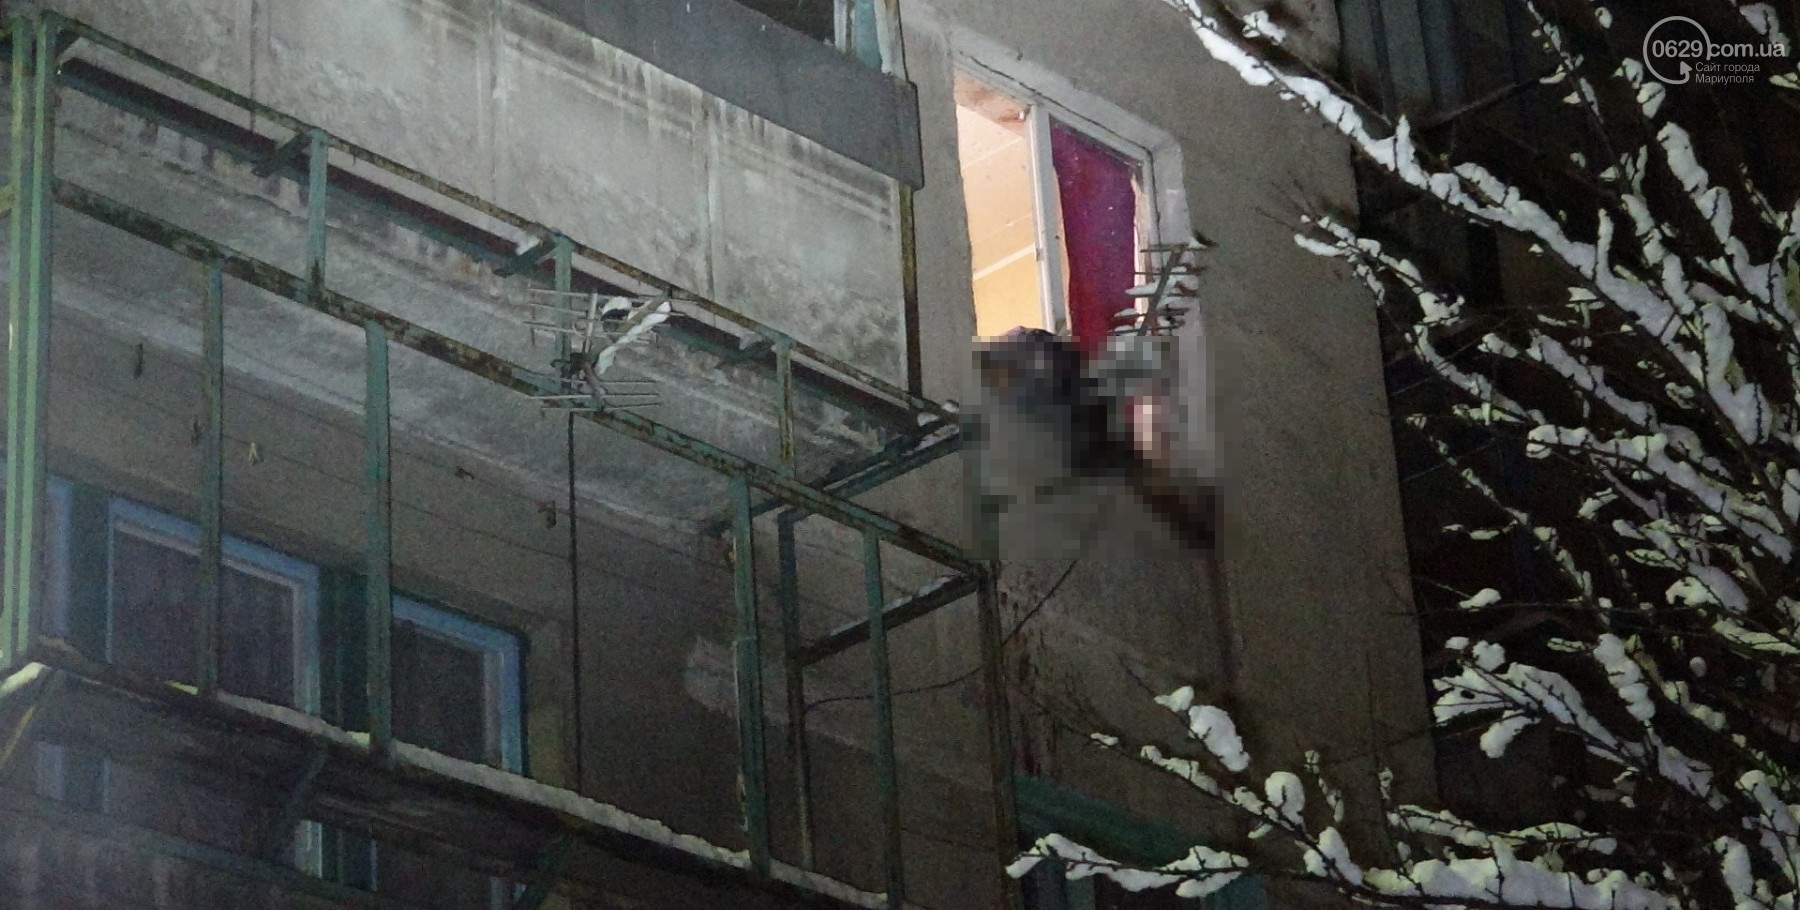 В Мариуполе в квартире взорвалась граната, двое погибших